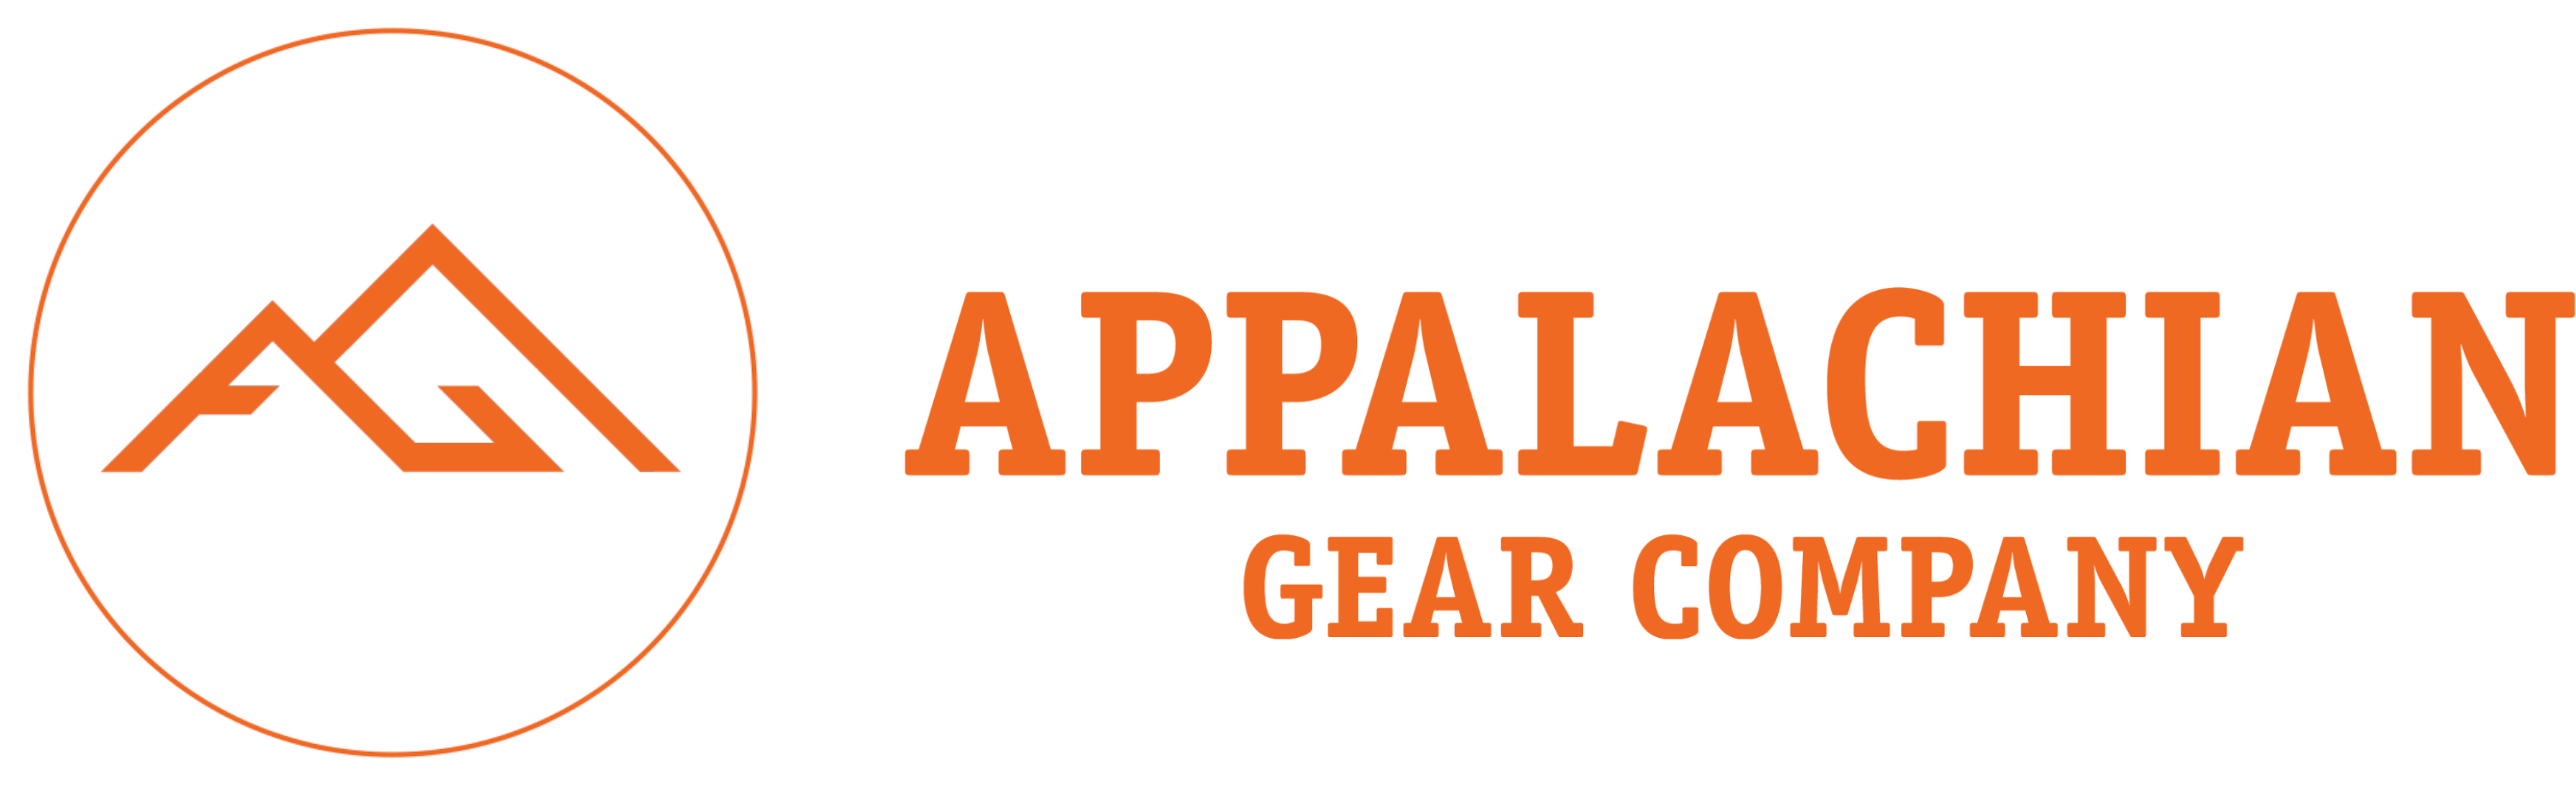 Appalachian Gear Company